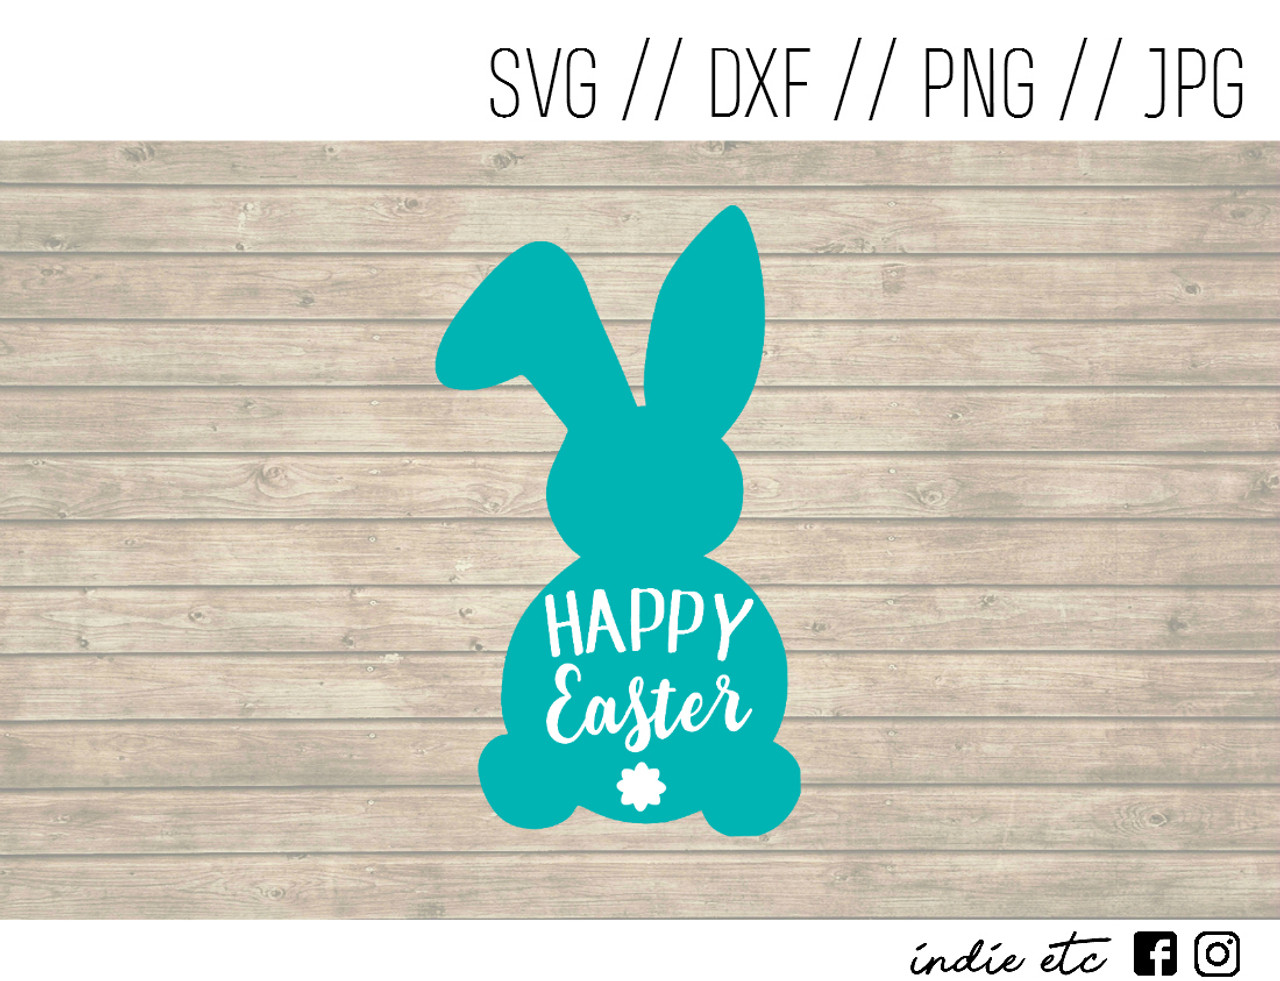 Download Happy Easter Digital Art File Easter Bunny svg dxf png jpeg